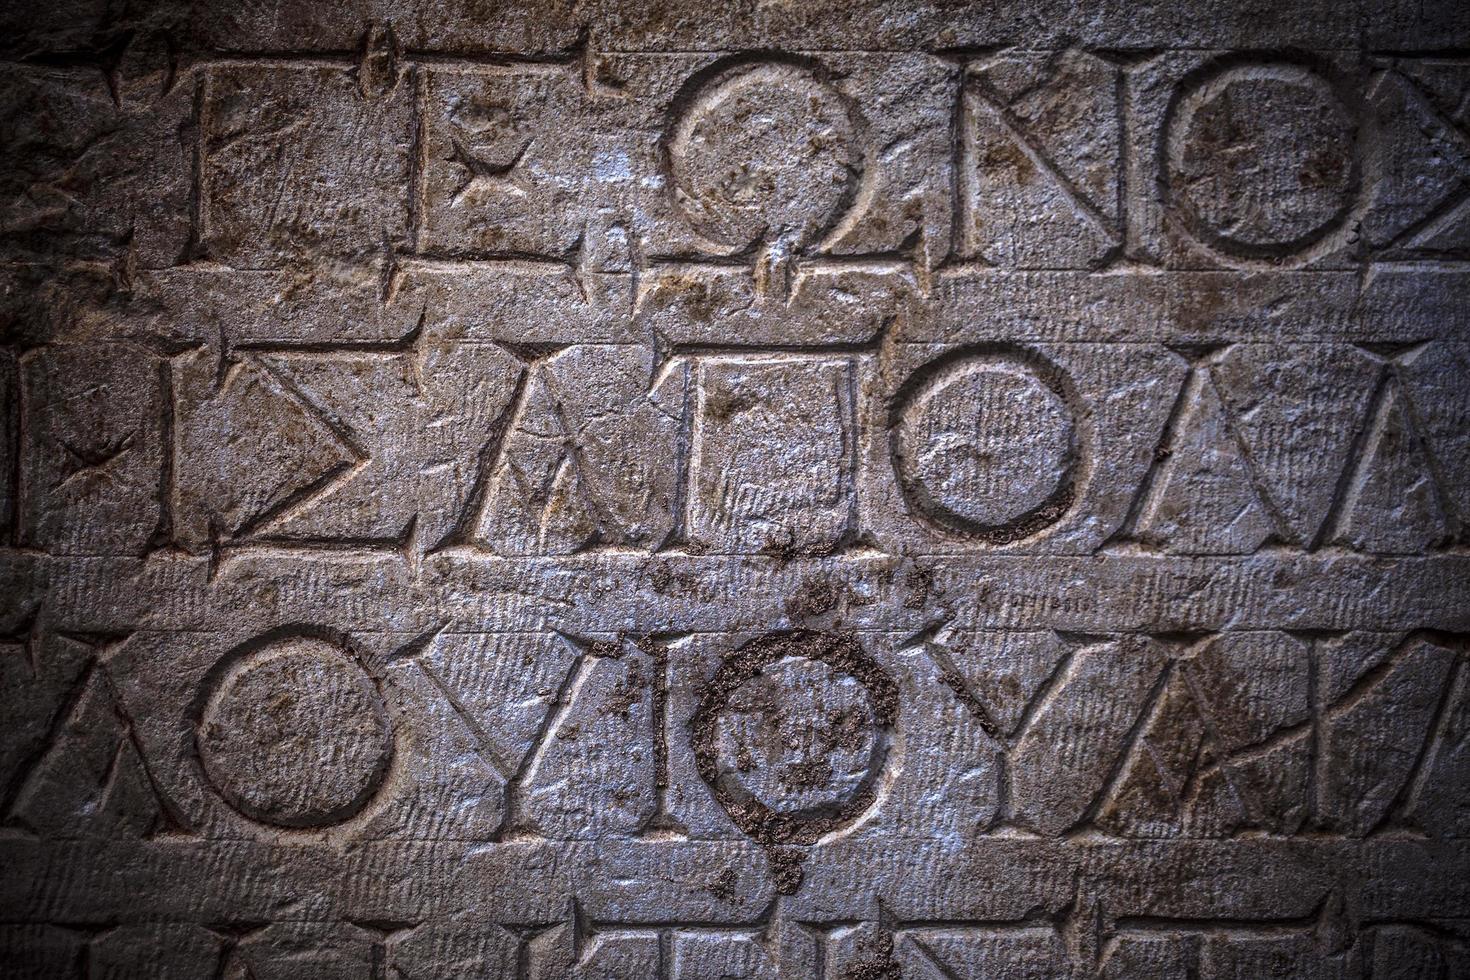 historiska symboler tecknar alfabet i antika Egypten foto